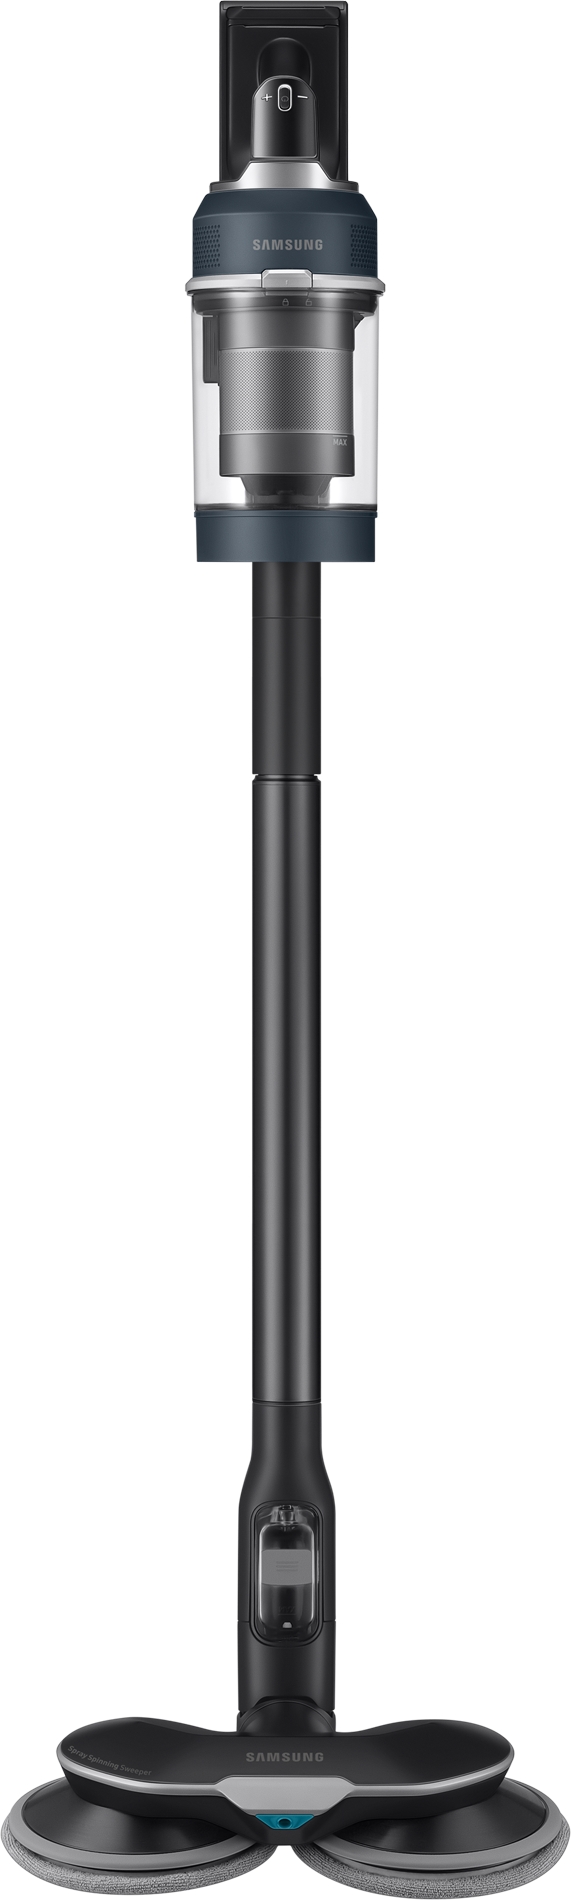 Samsung – aspirateur sans fil jet one (vs20a95973b/eV), 210 W, sur mesure -  AliExpress